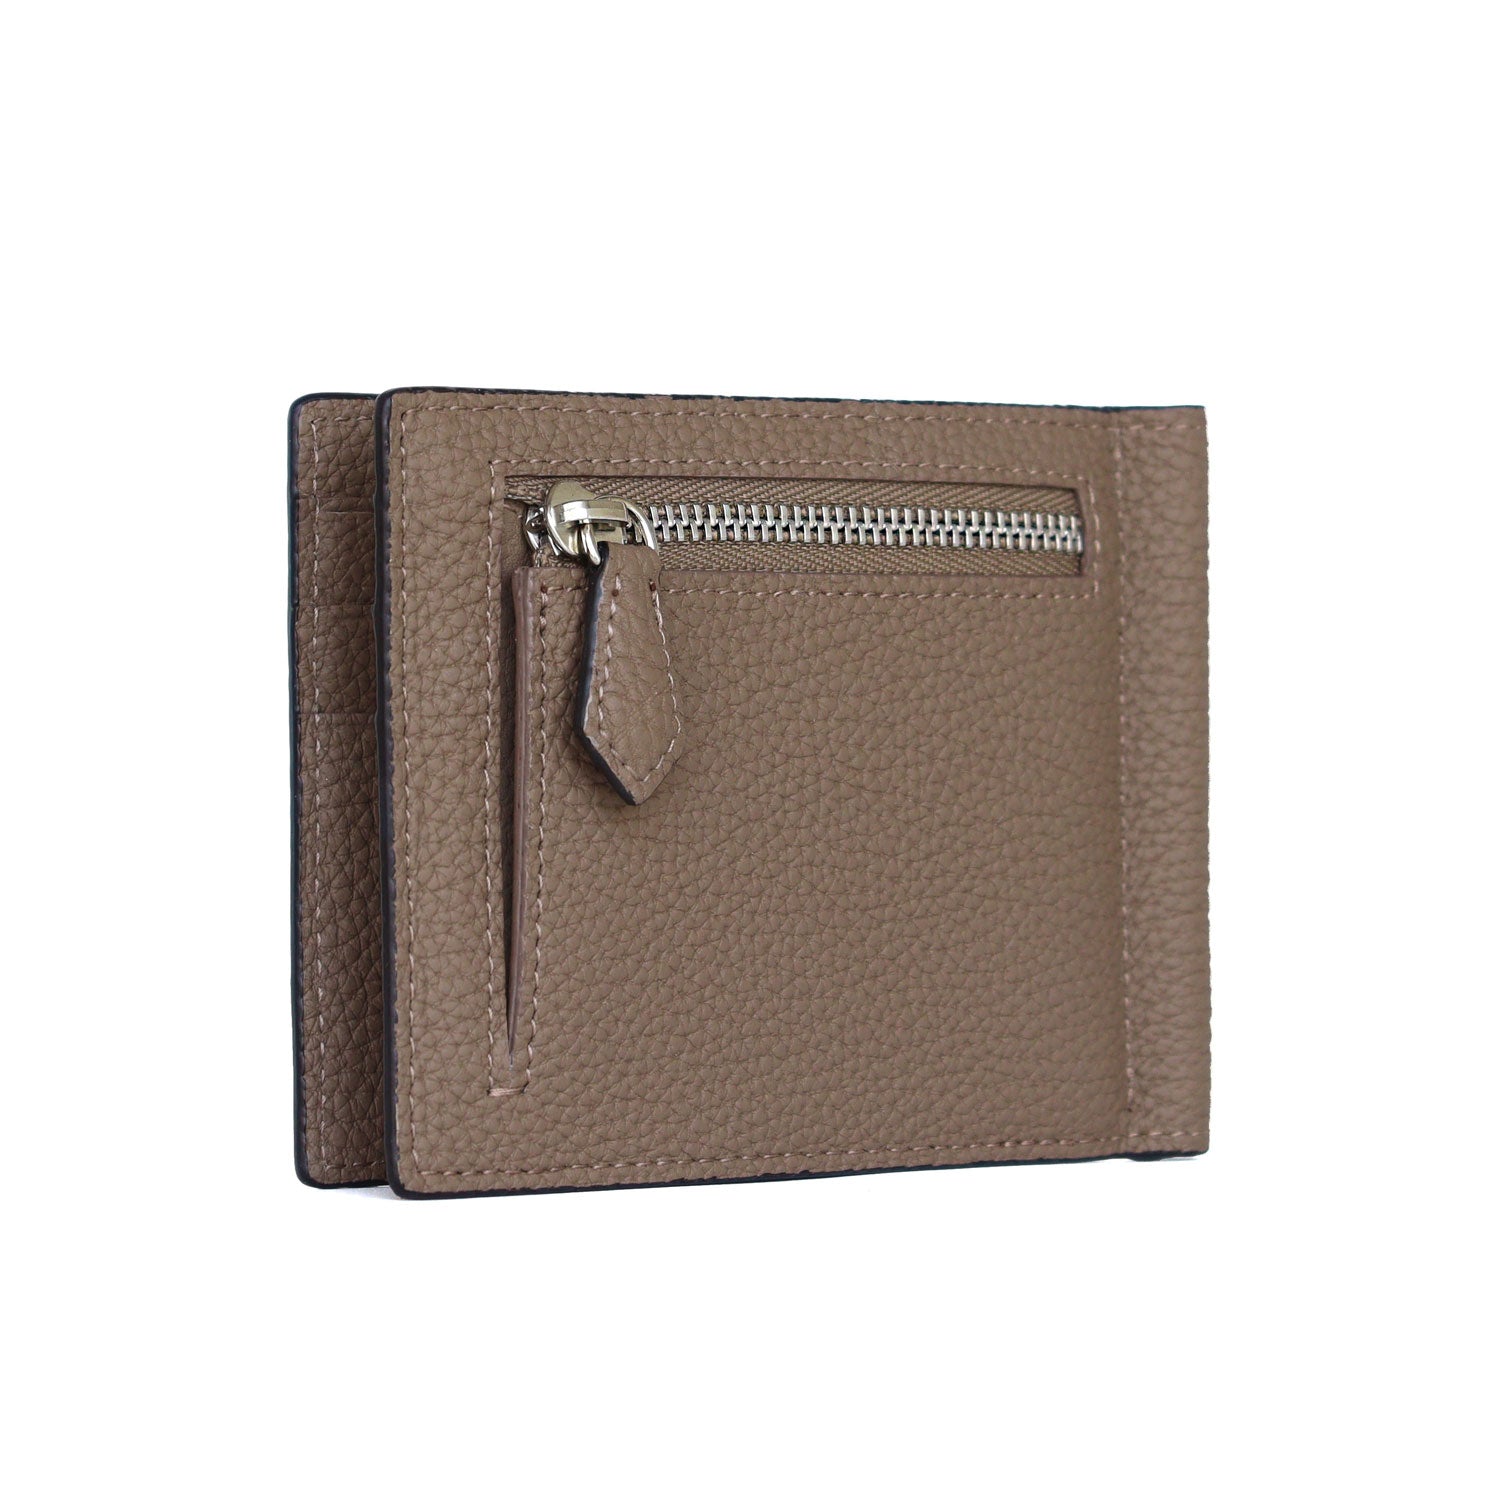 上質なレザーの二つ折り財布 – イタリア(ミラノ)発の高級革製品の通販